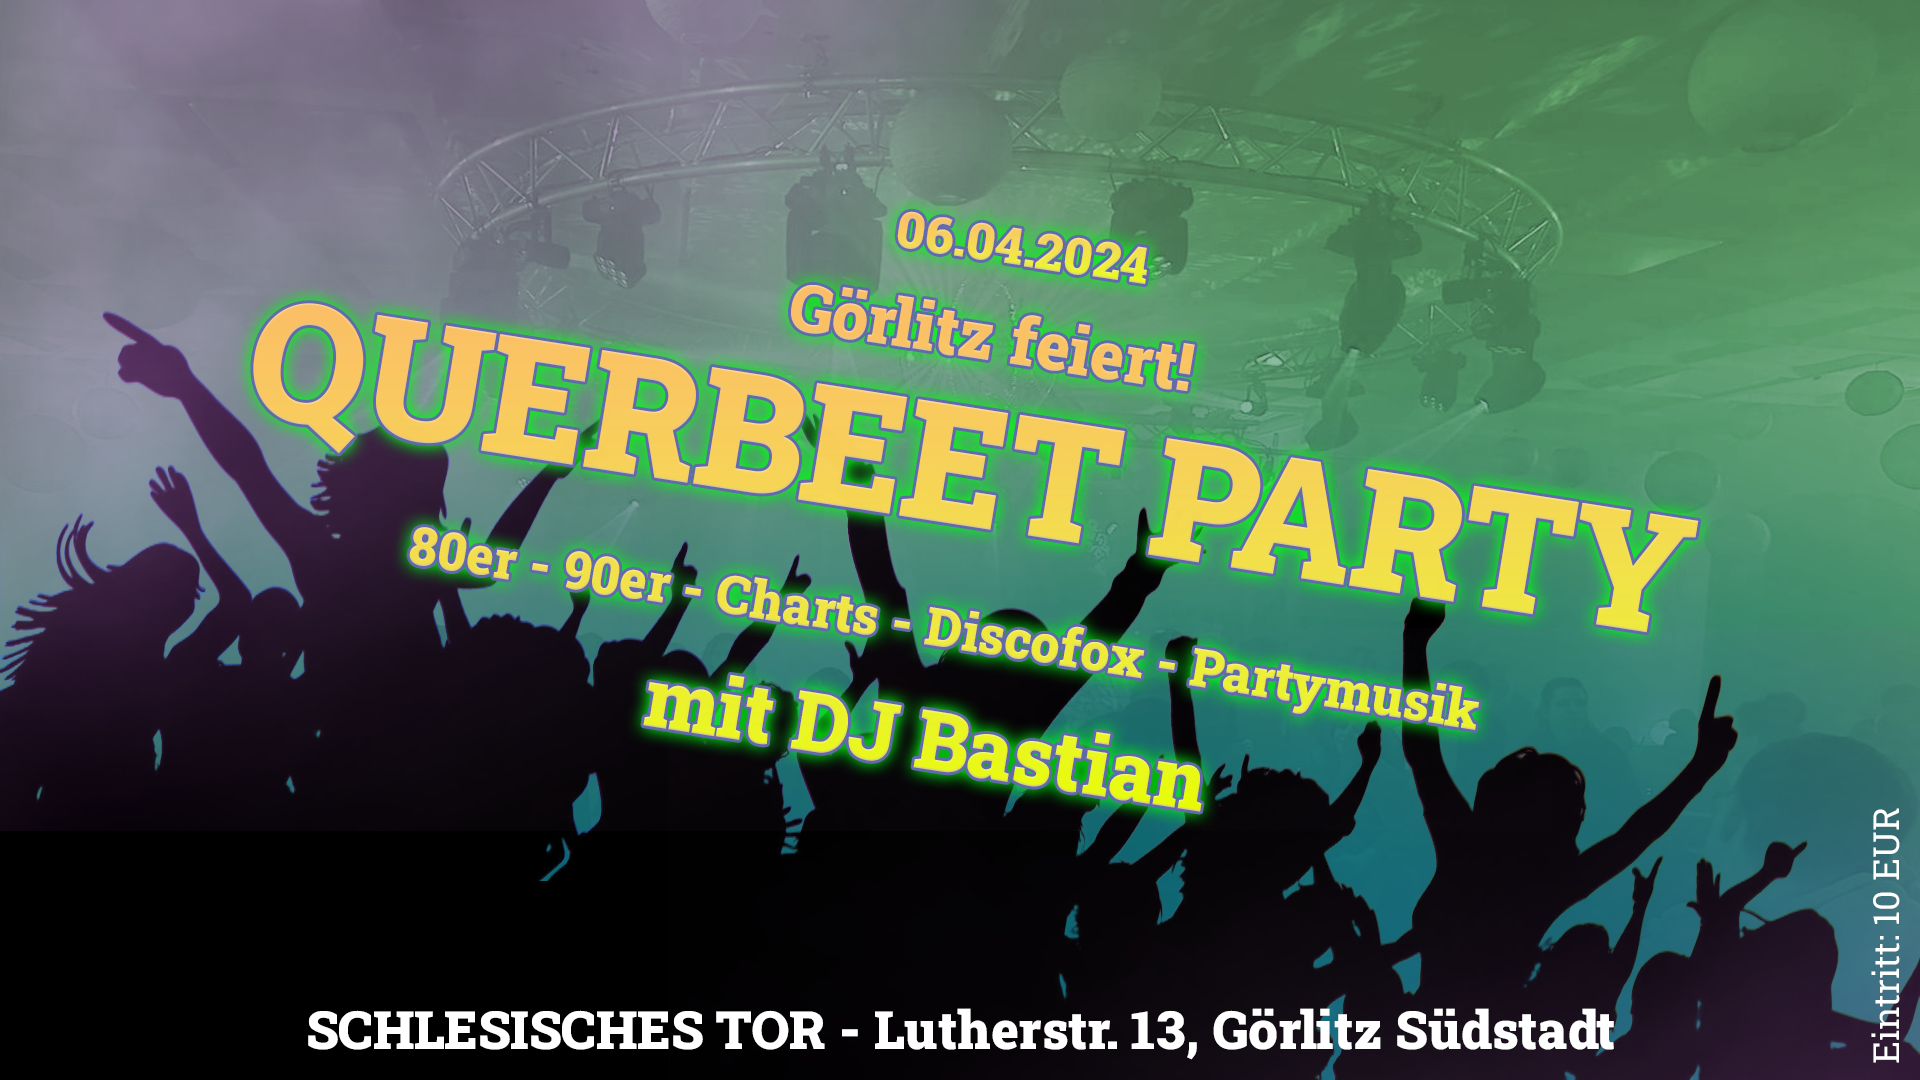 Görlitz feiert! Querbeet-Party 06.04.2024